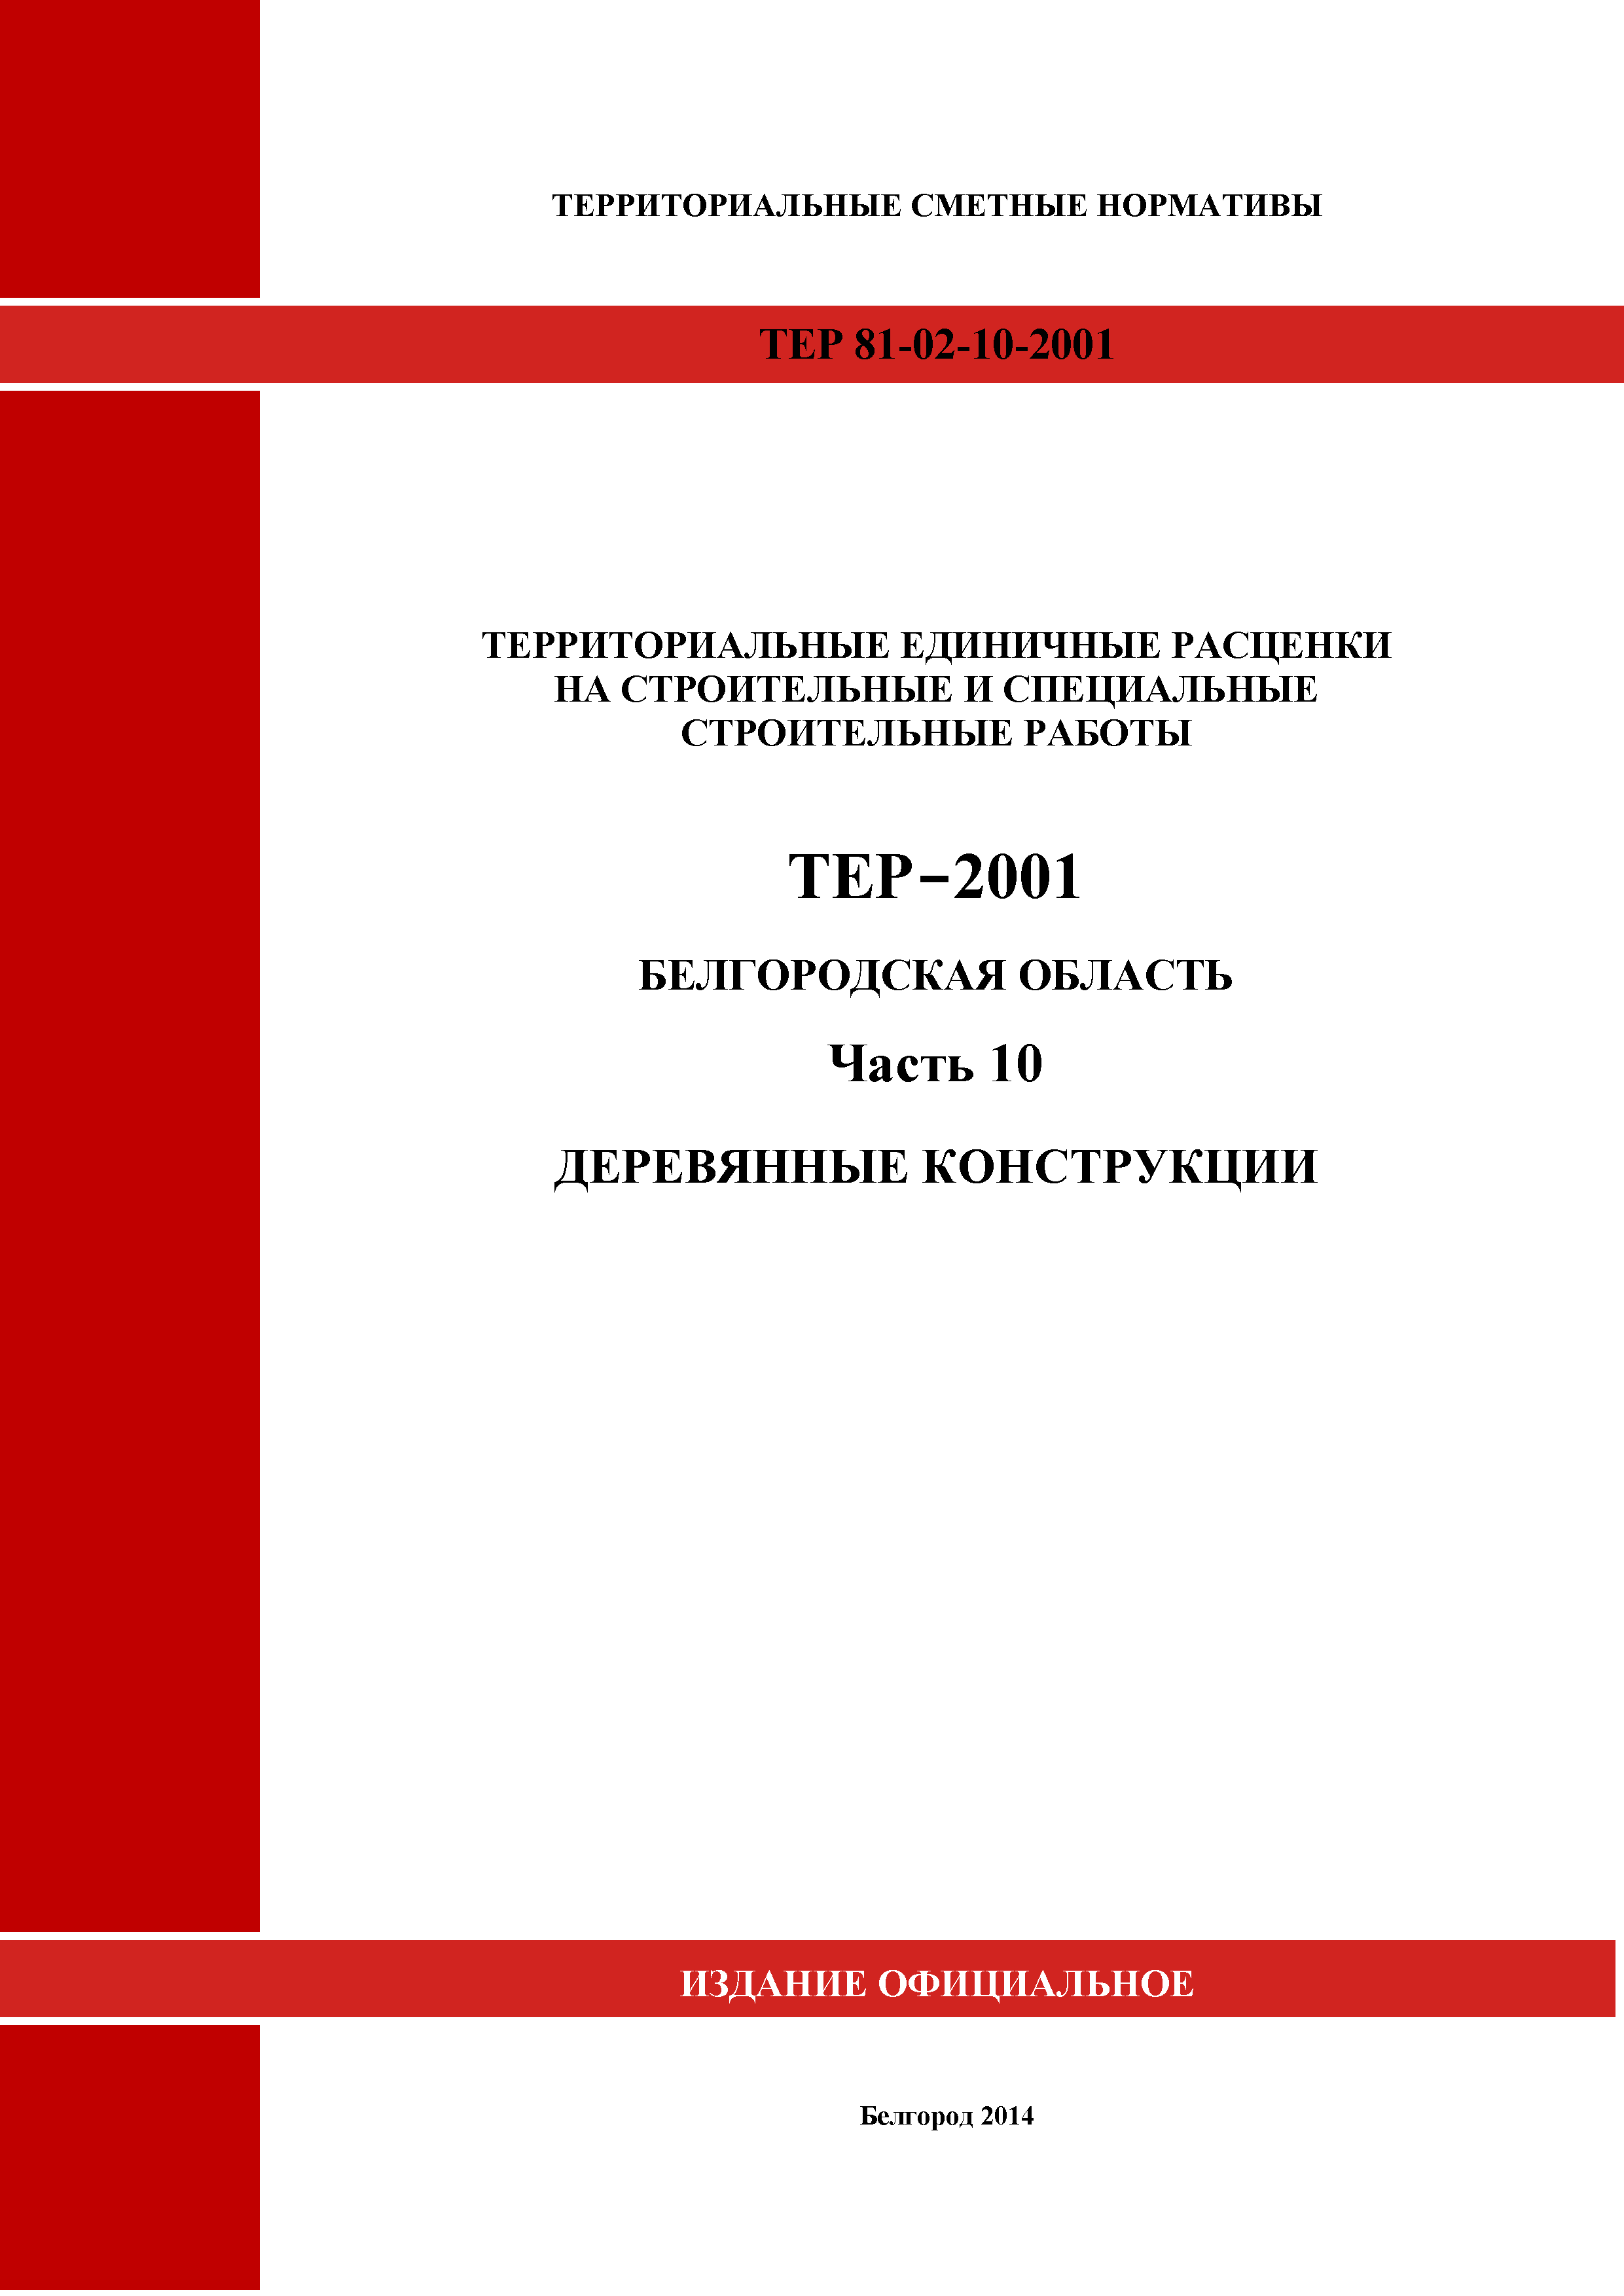 ТЕР Белгородская область 81-02-10-2001